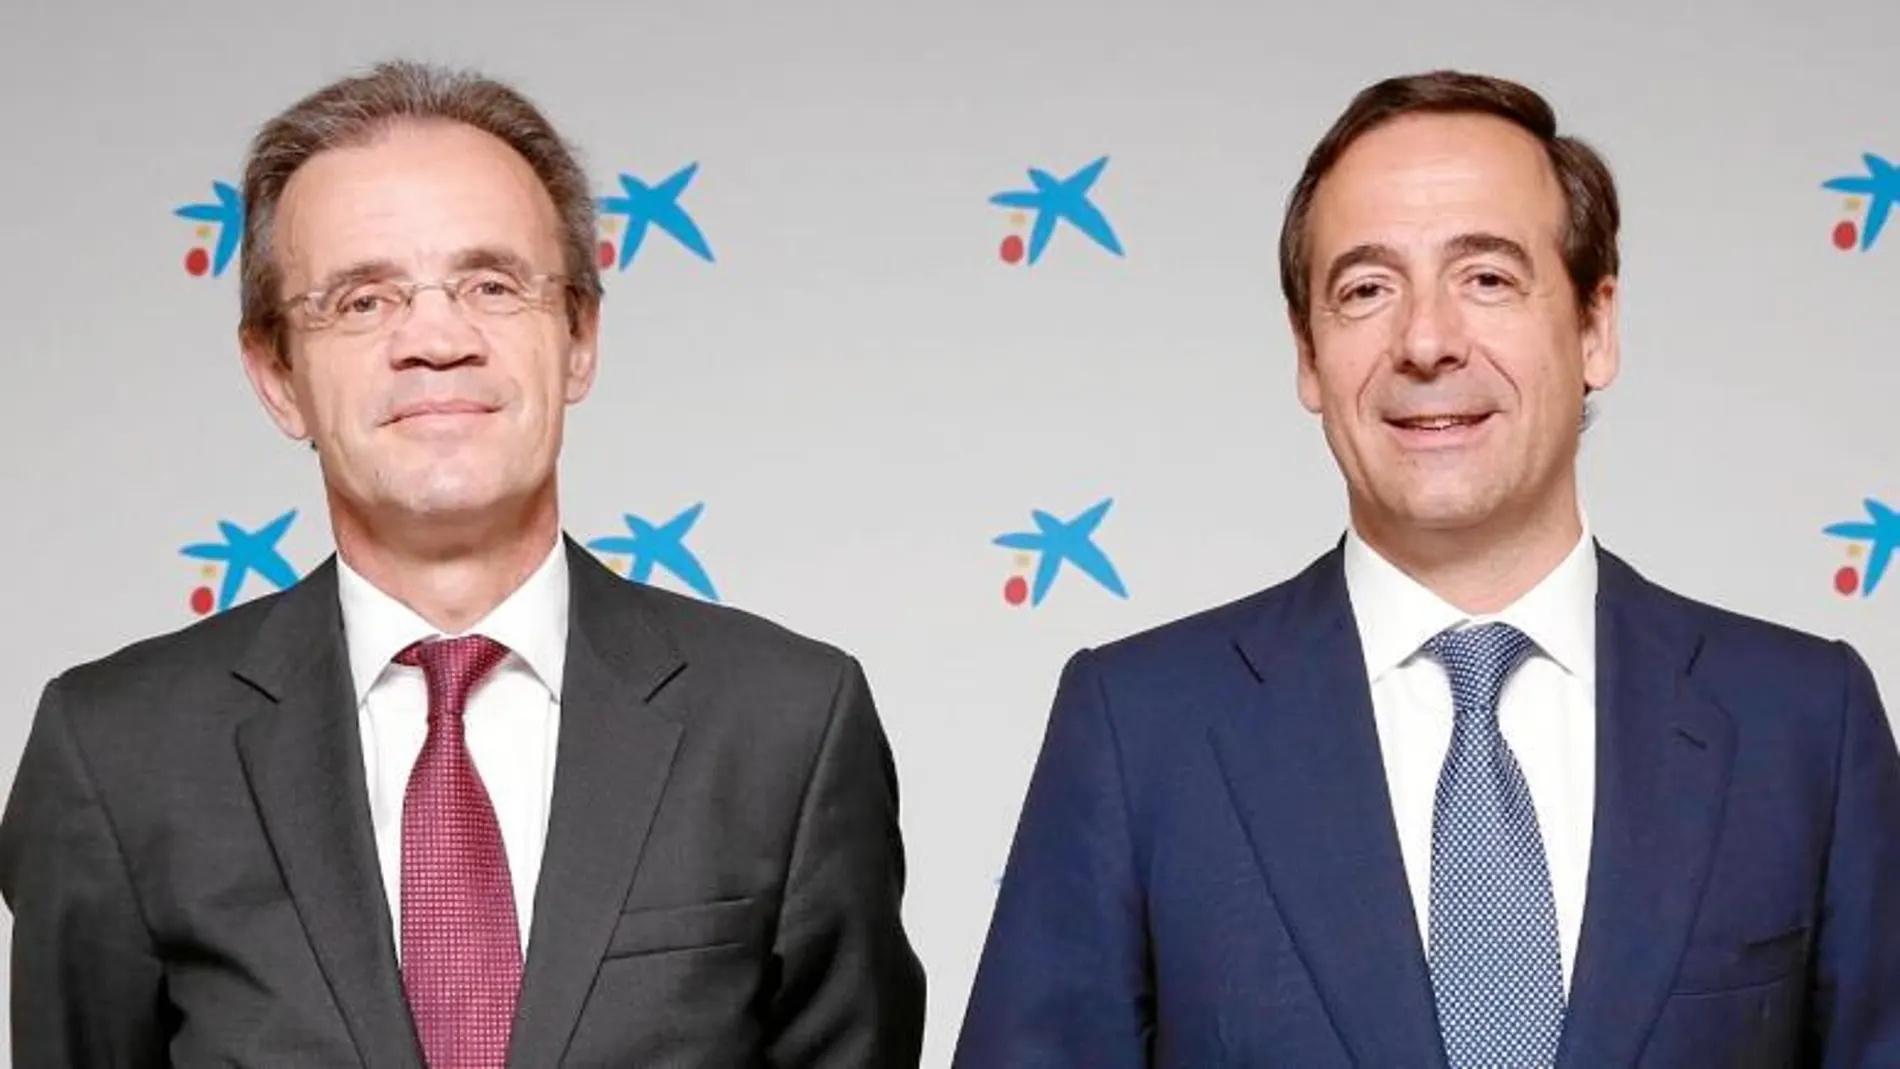 El presidente de Caixabank, Jordi Gual, y el consejero delegado, Gonzalo Gortázar